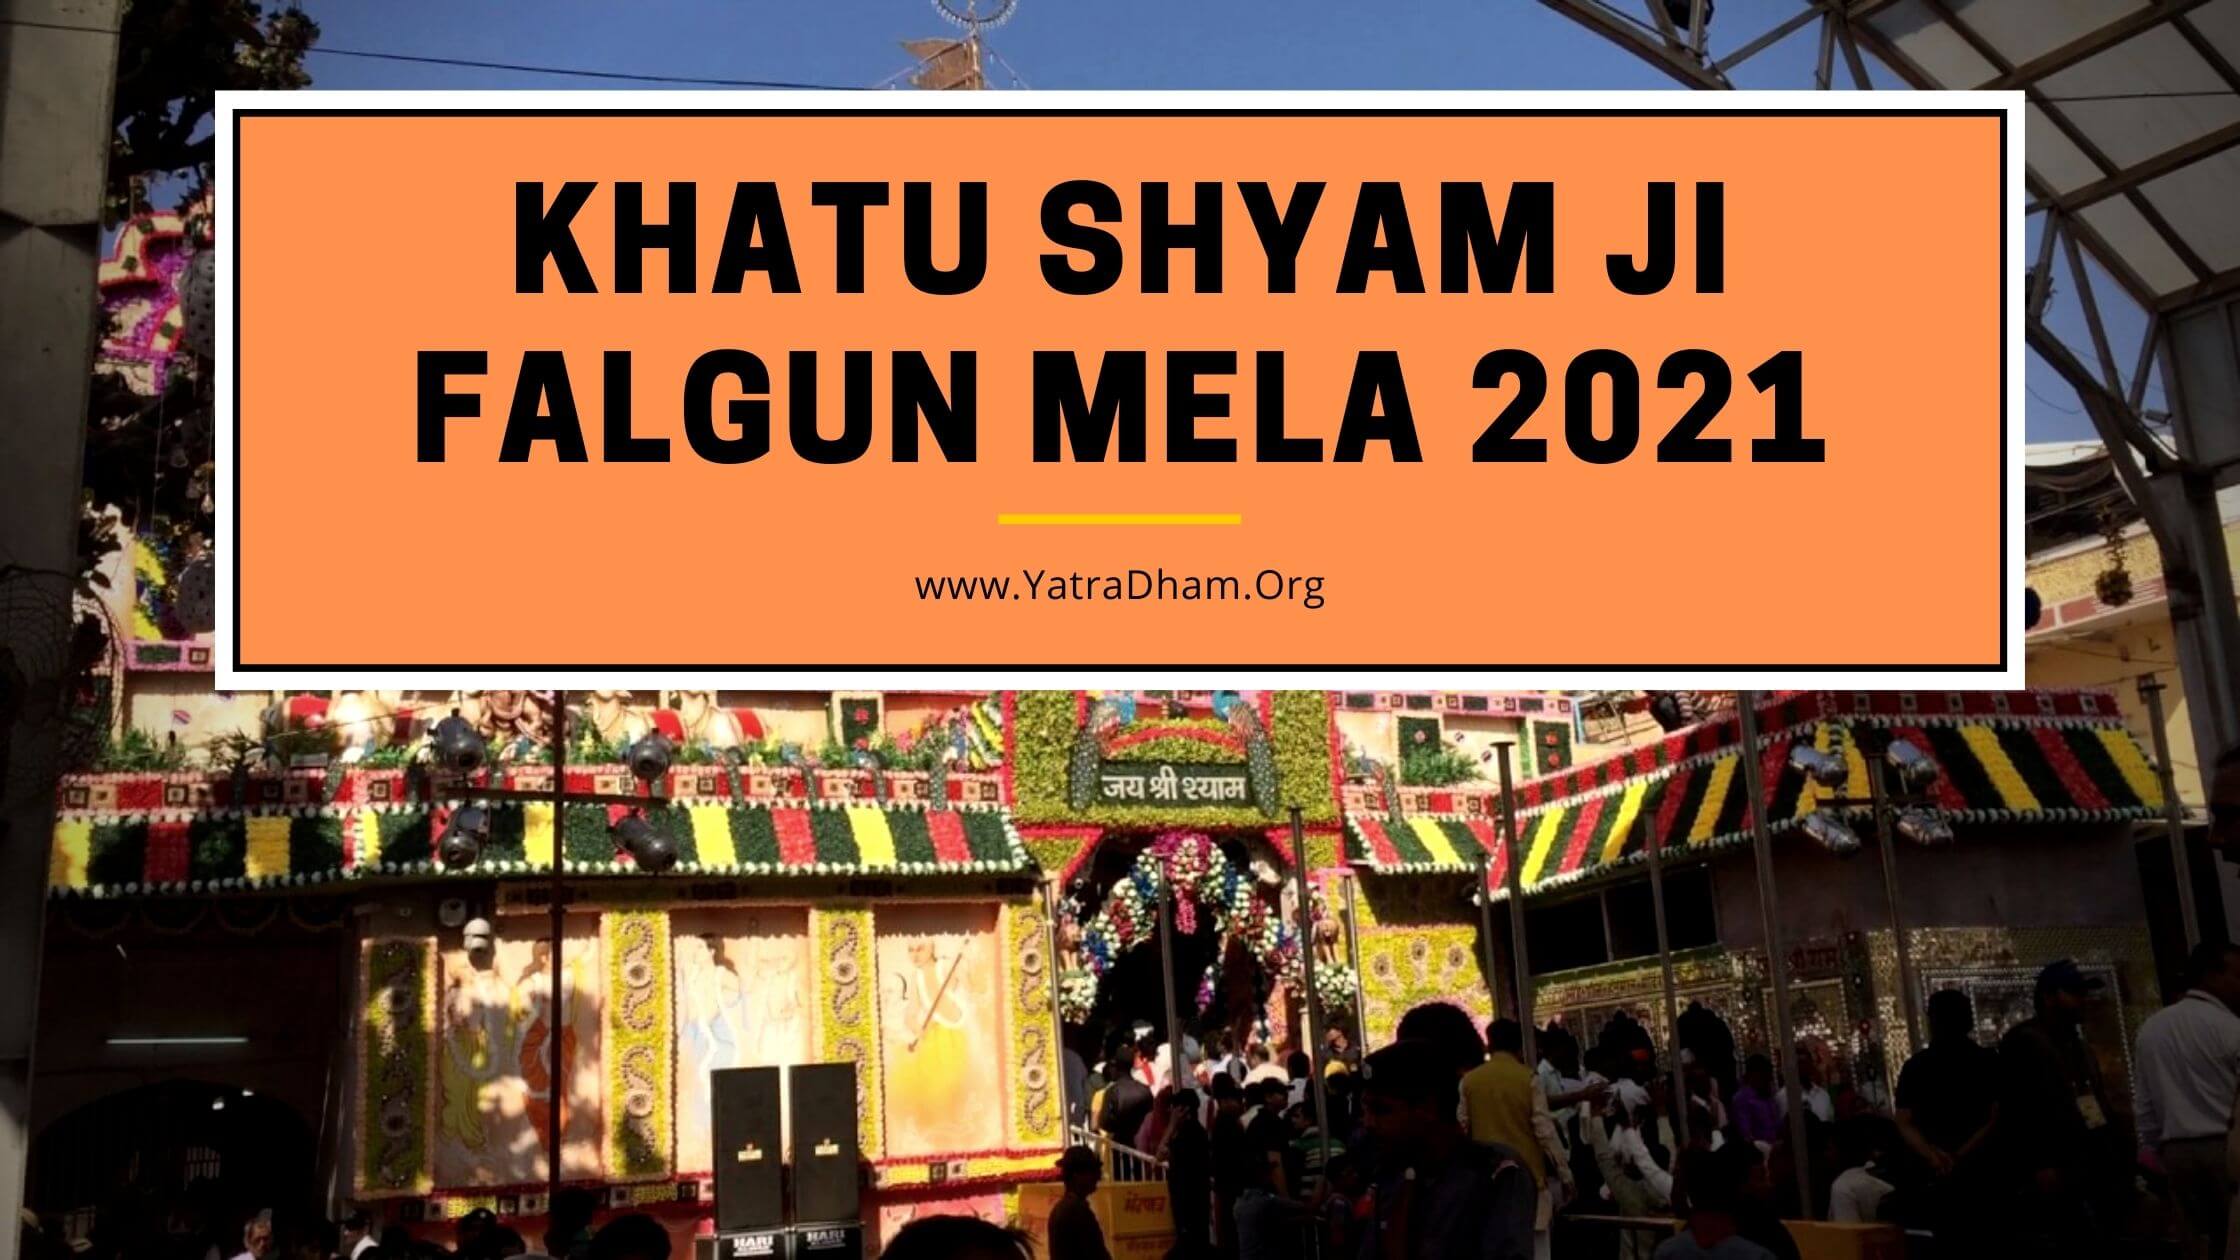 Khatu Shyam Ji Falgun Mela 2021